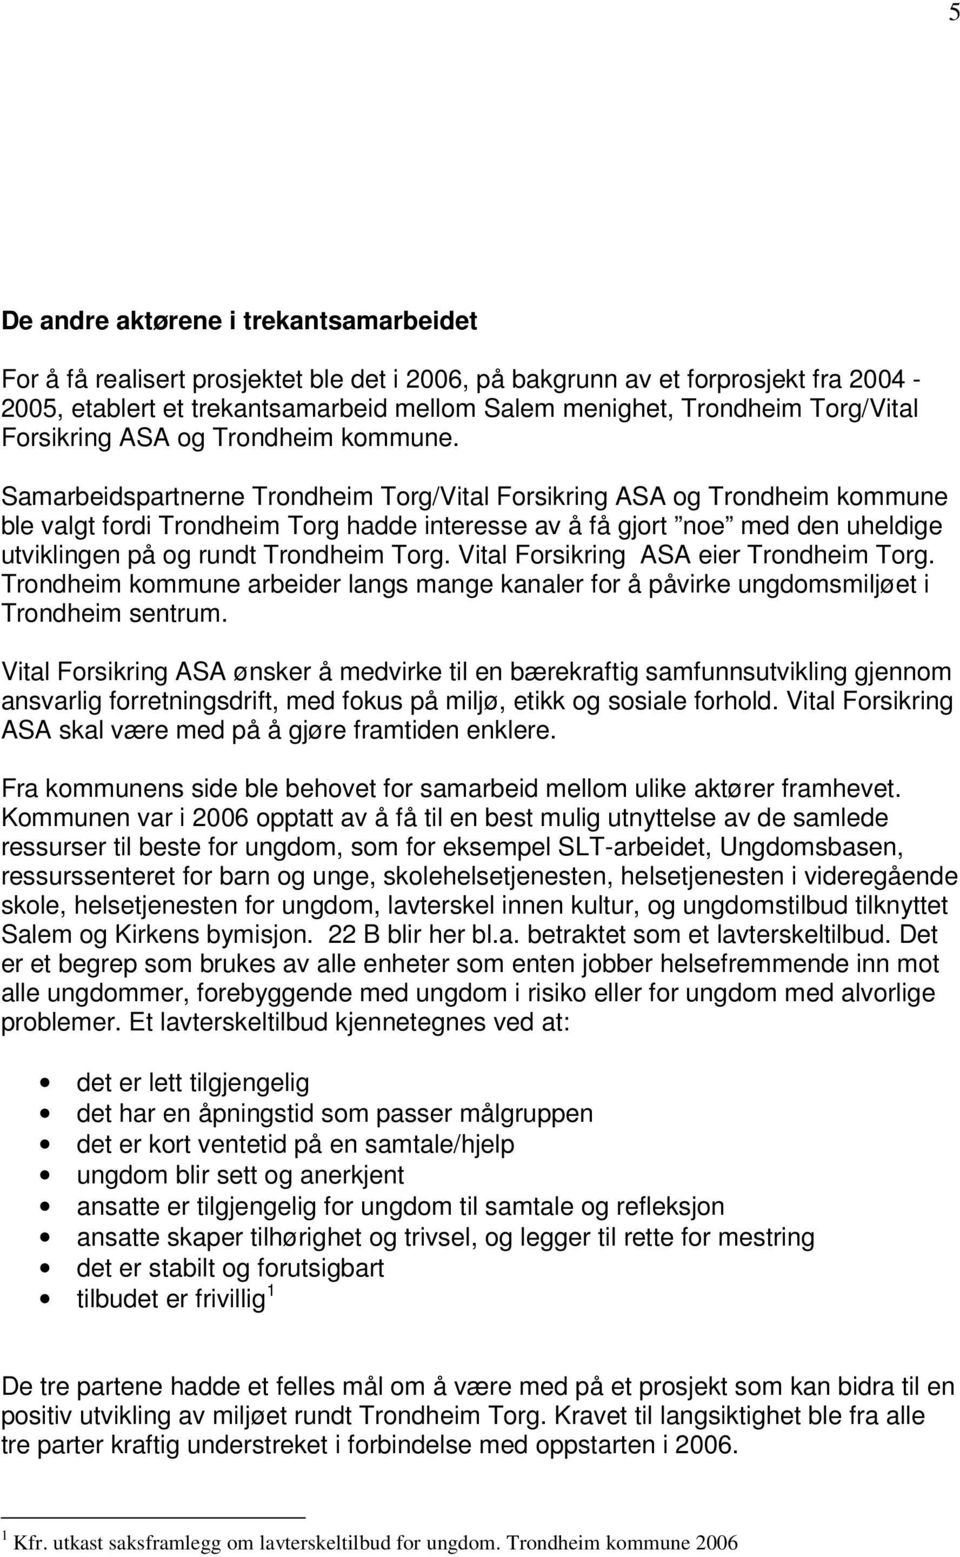 Samarbeidspartnerne Trondheim Torg/Vital Forsikring ASA og Trondheim kommune ble valgt fordi Trondheim Torg hadde interesse av å få gjort noe med den uheldige utviklingen på og rundt Trondheim Torg.